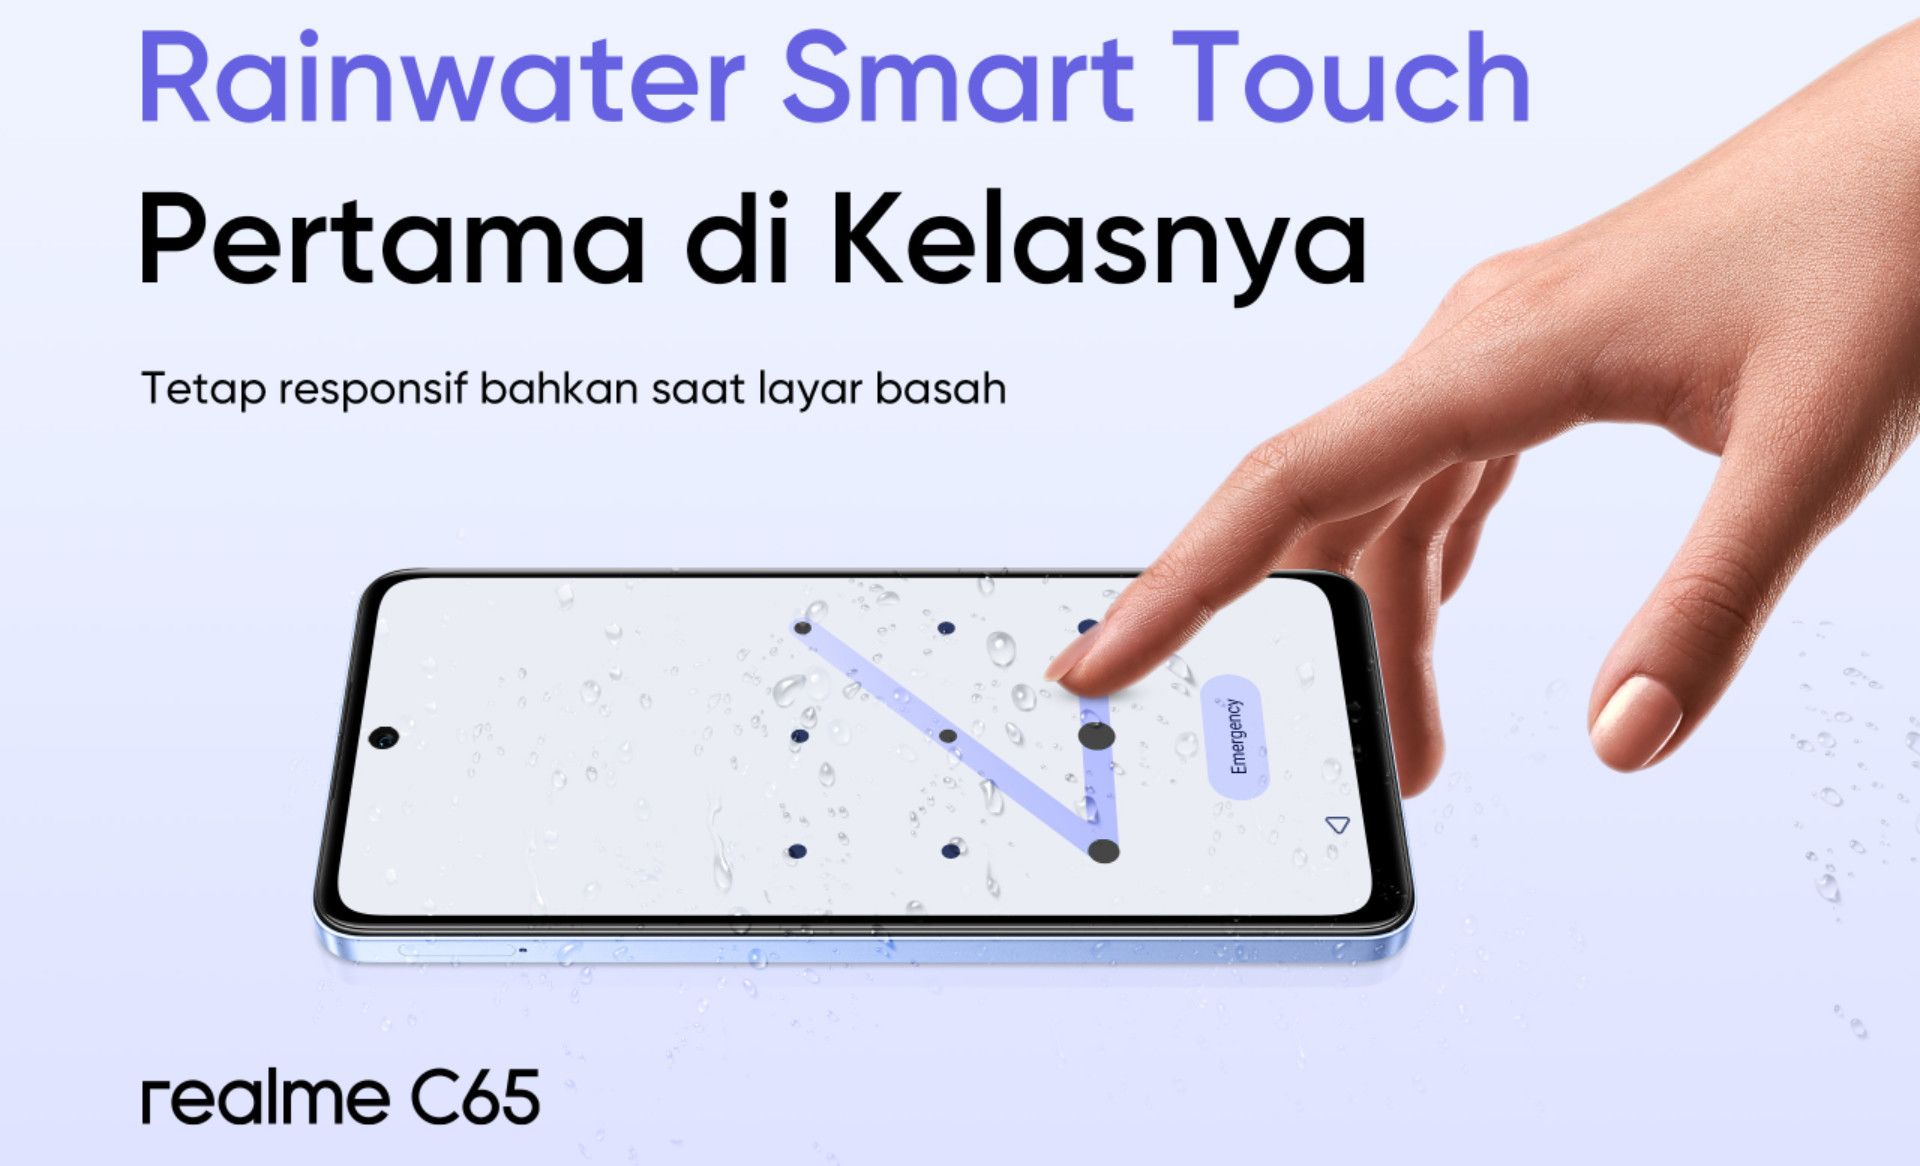 Teknologi Rainwater Smart Touch di Realme C65